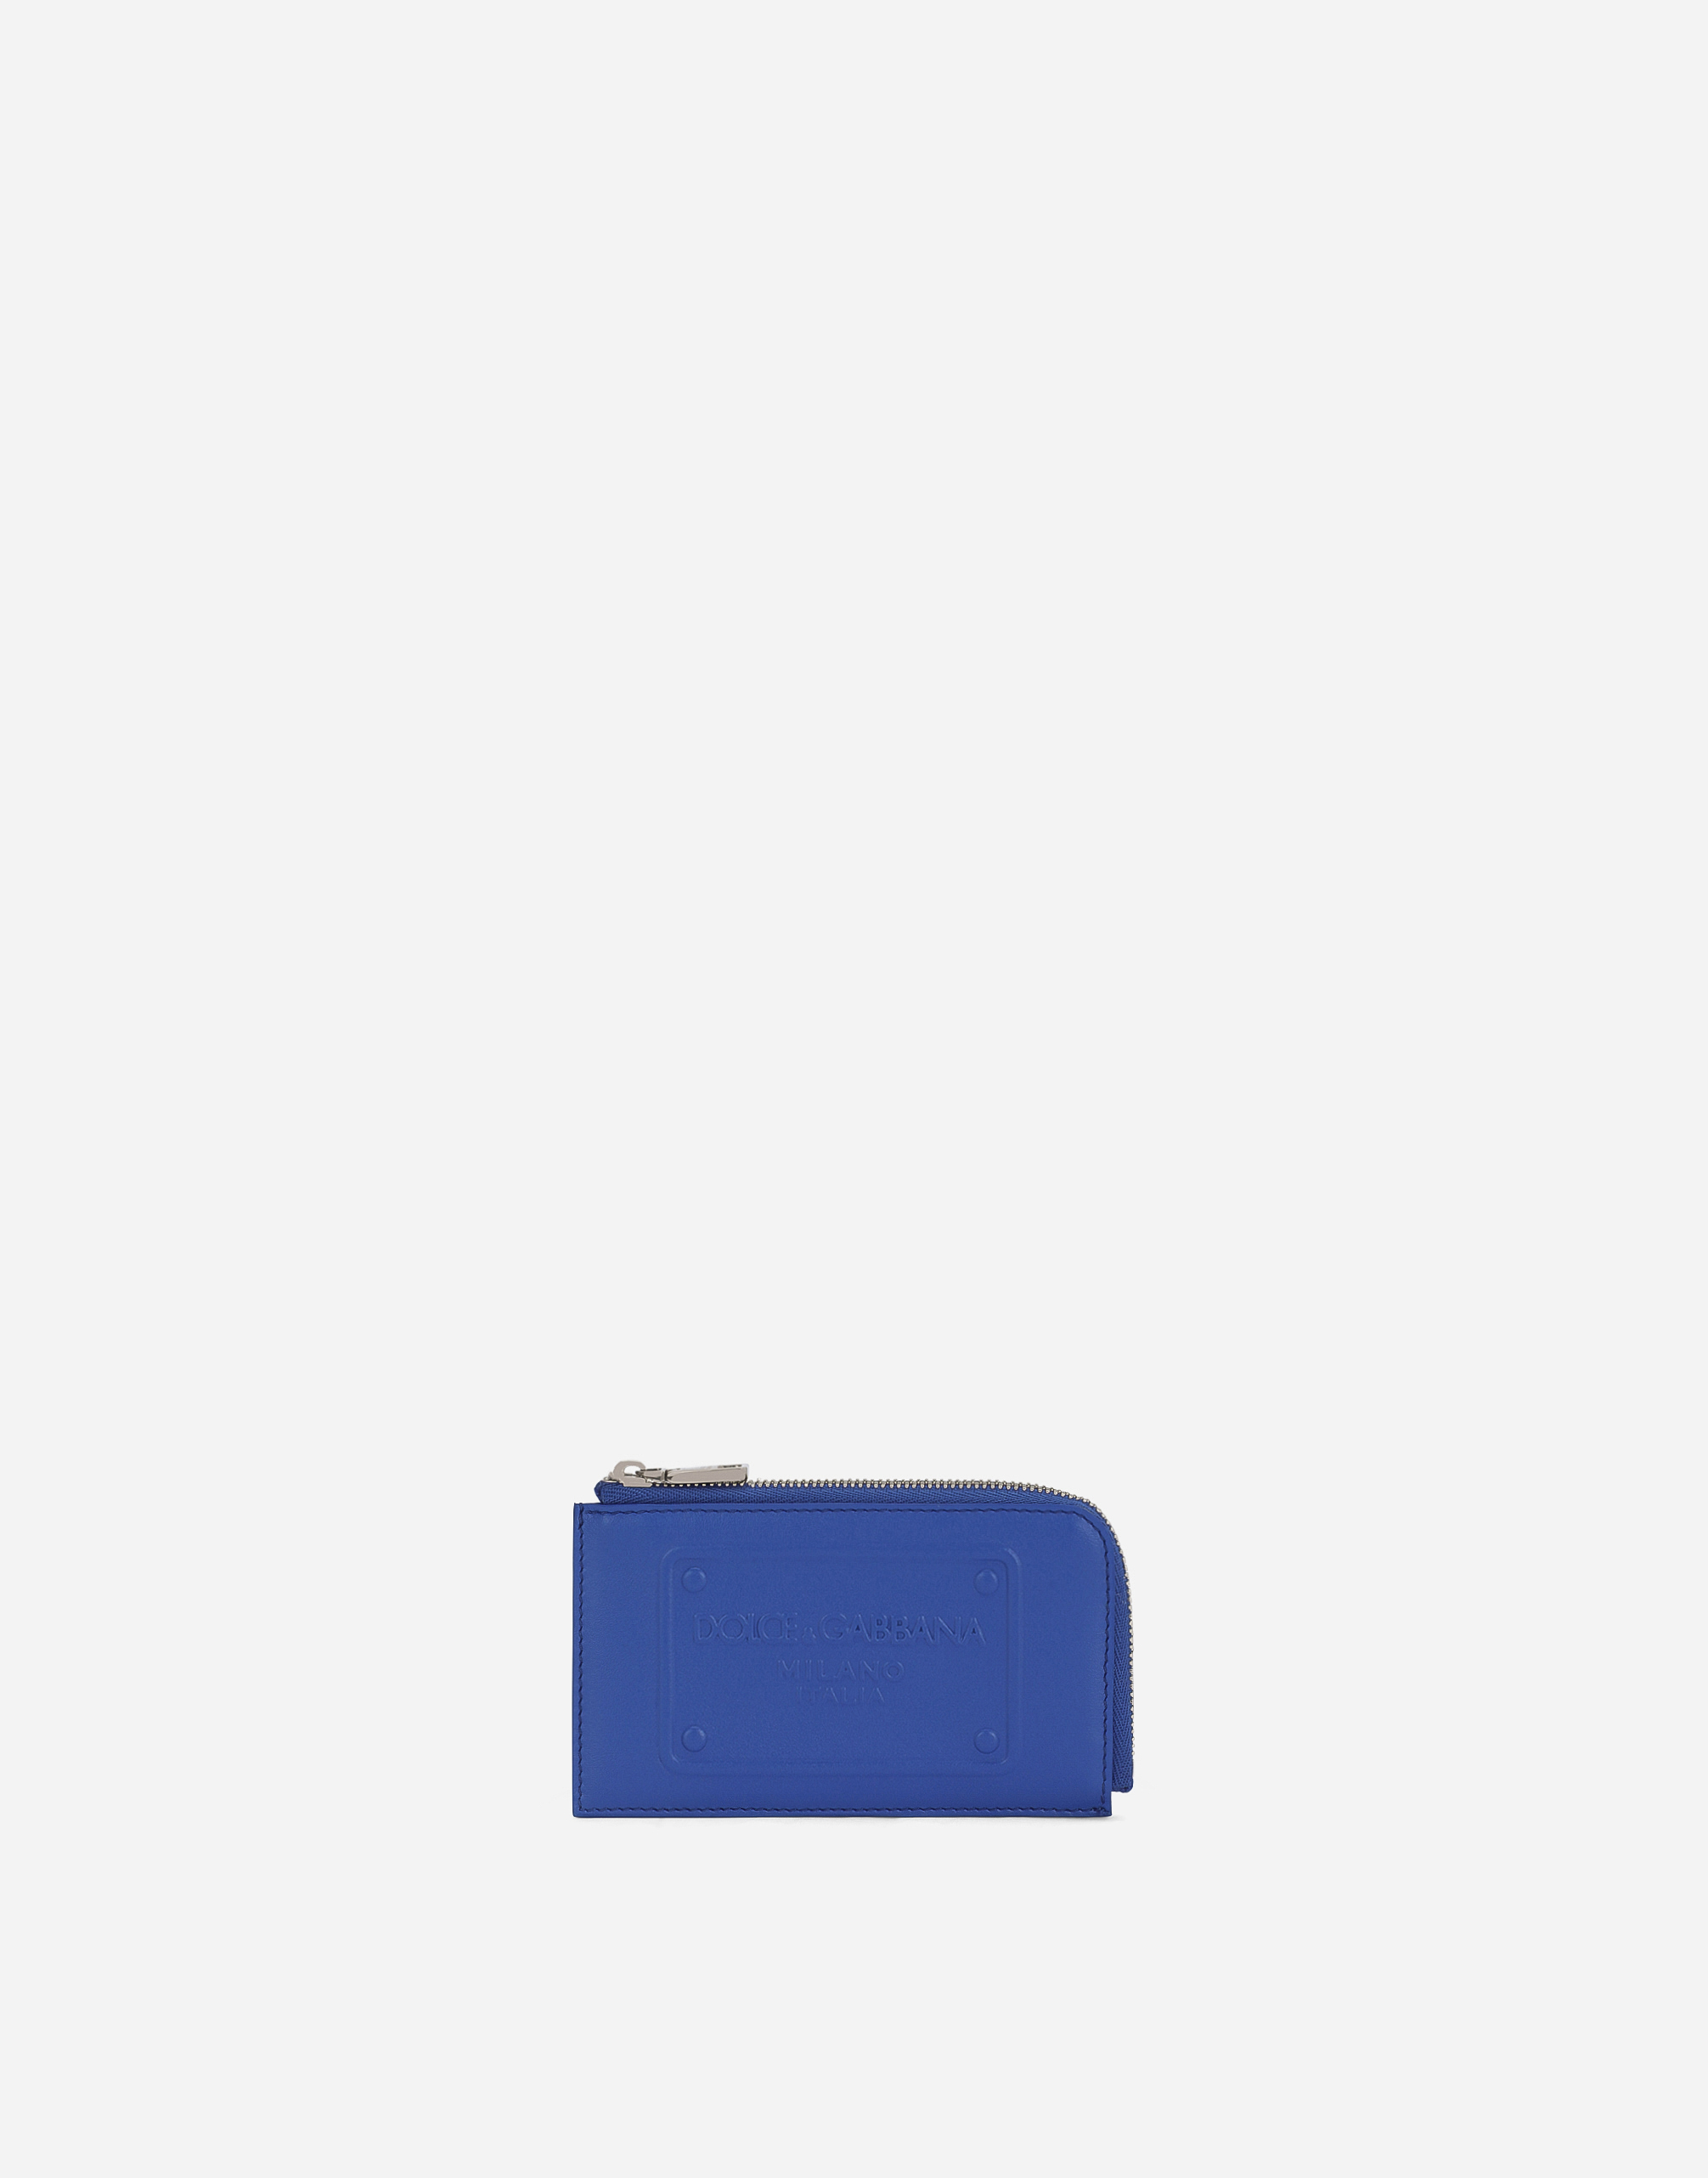 Dolce & Gabbana Calfskin Card Holder With Raised Logo In Blue